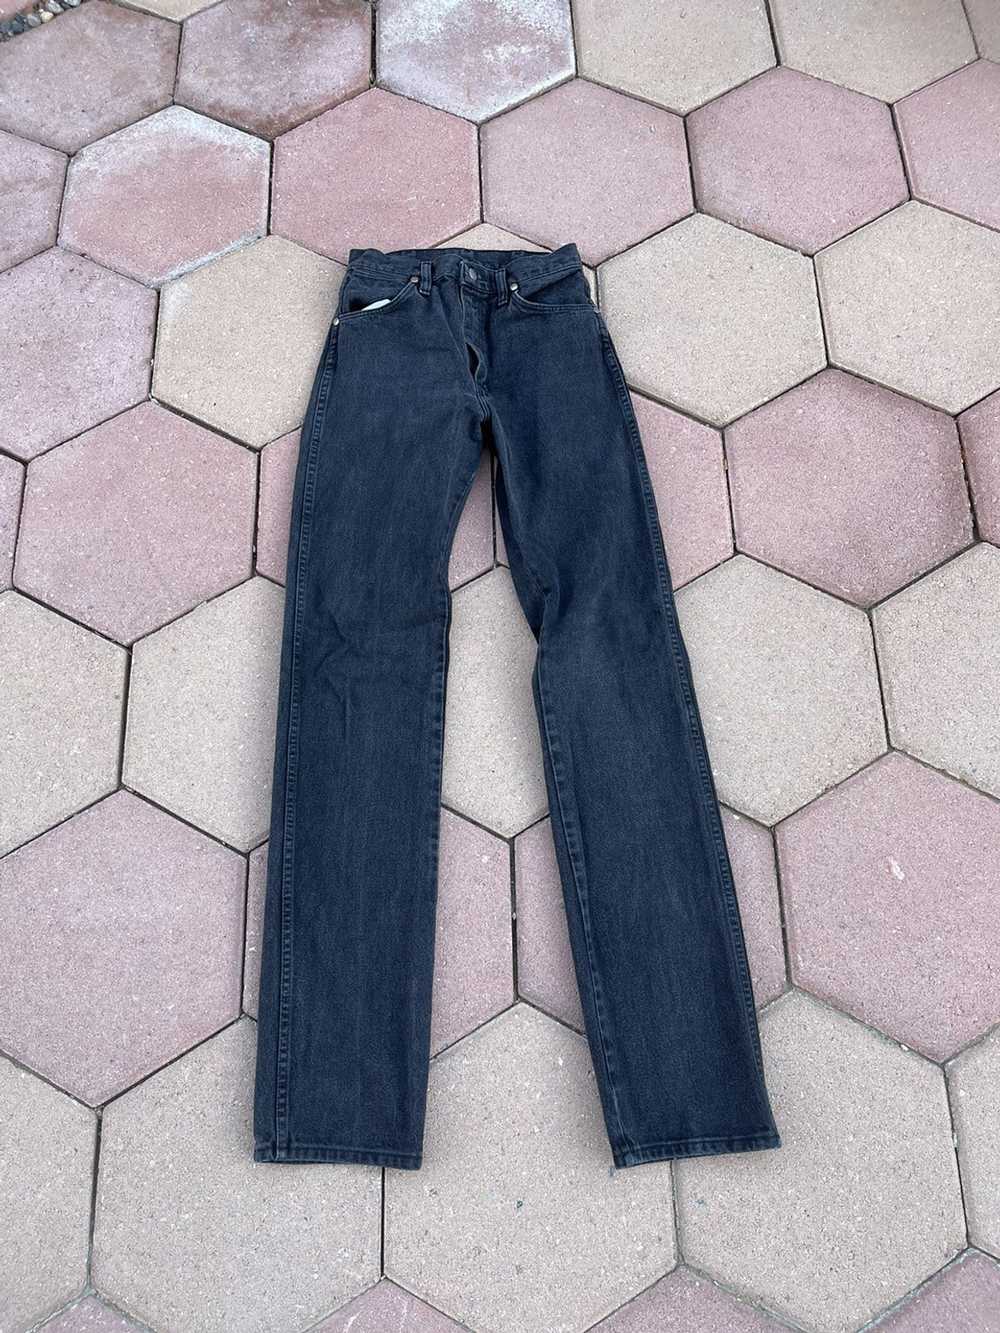 Vintage × Wrangler Vintage Wrangler Denim Jeans - image 1